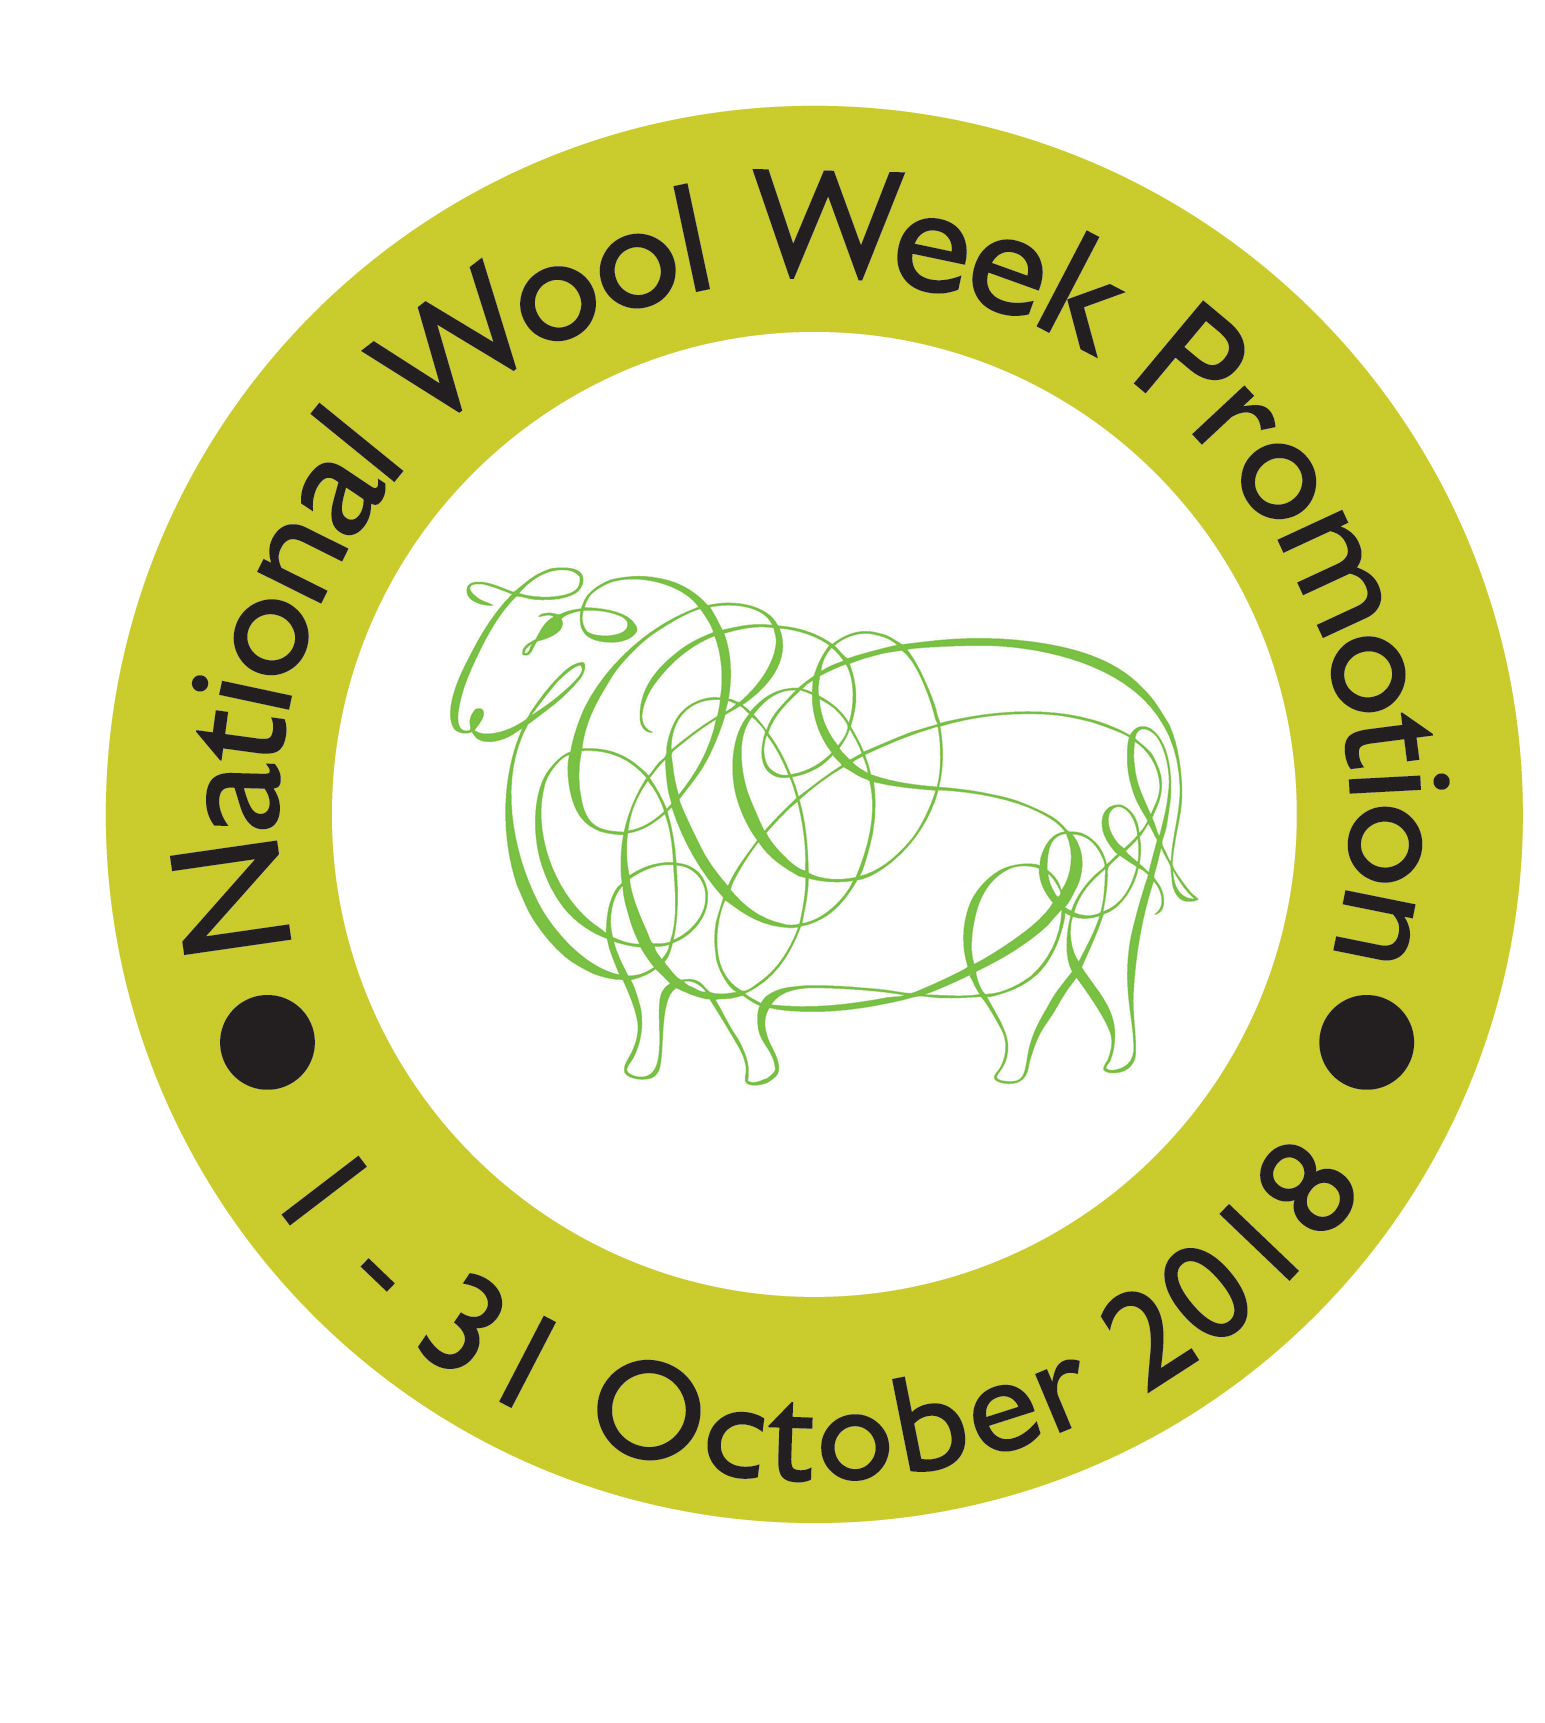 National Wool Week Promotions